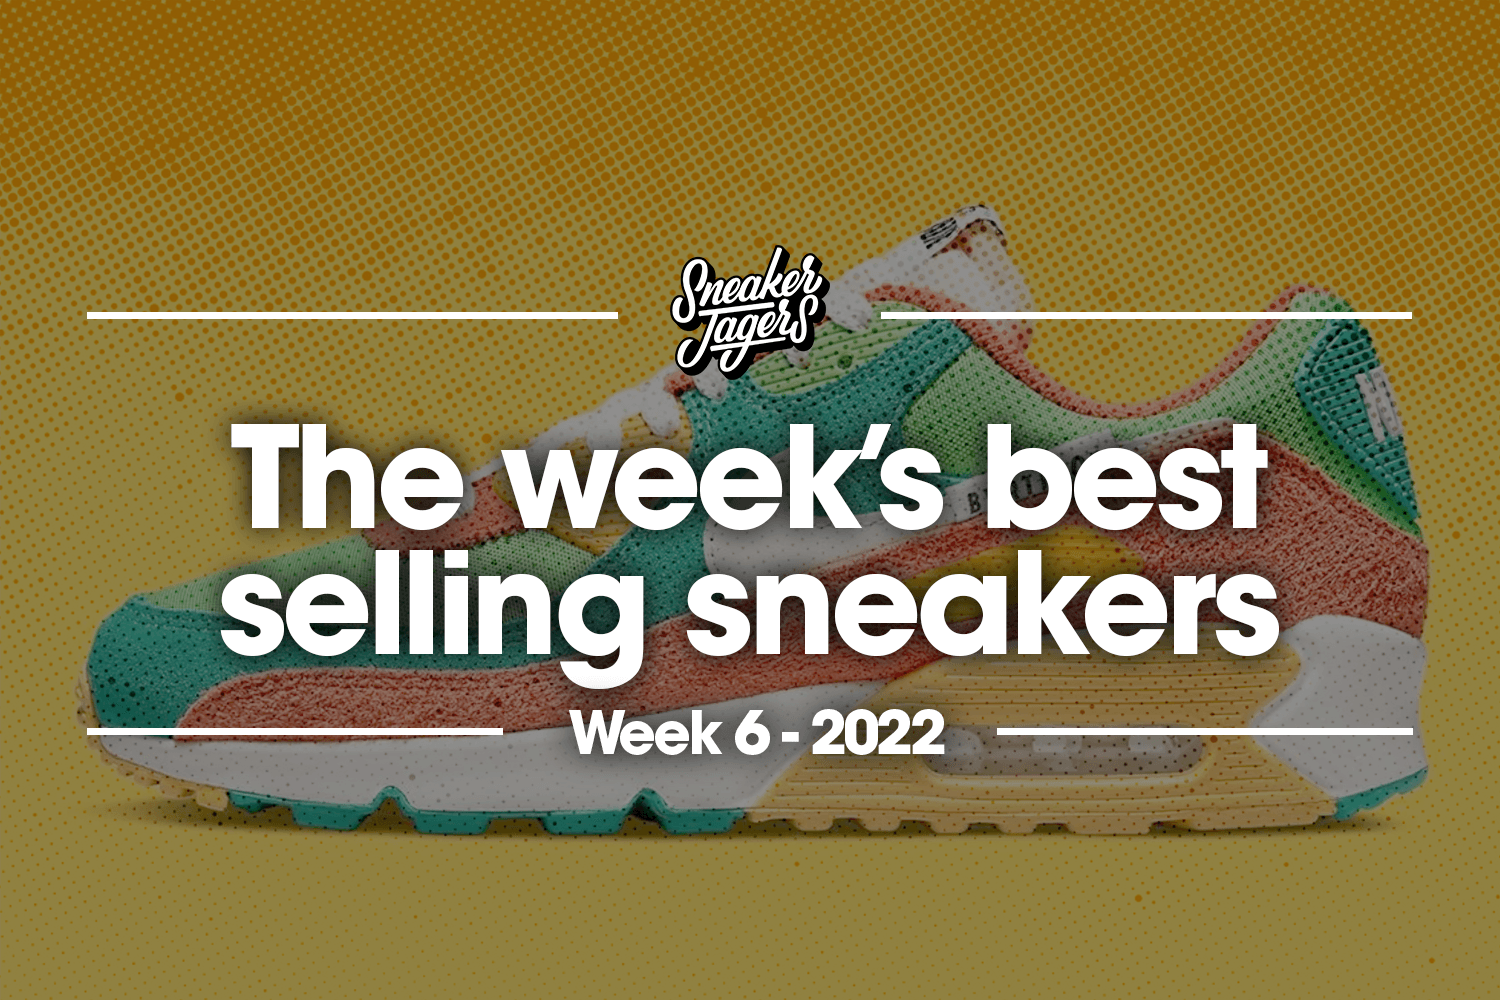 The 5 best-selling sneakers of week 6